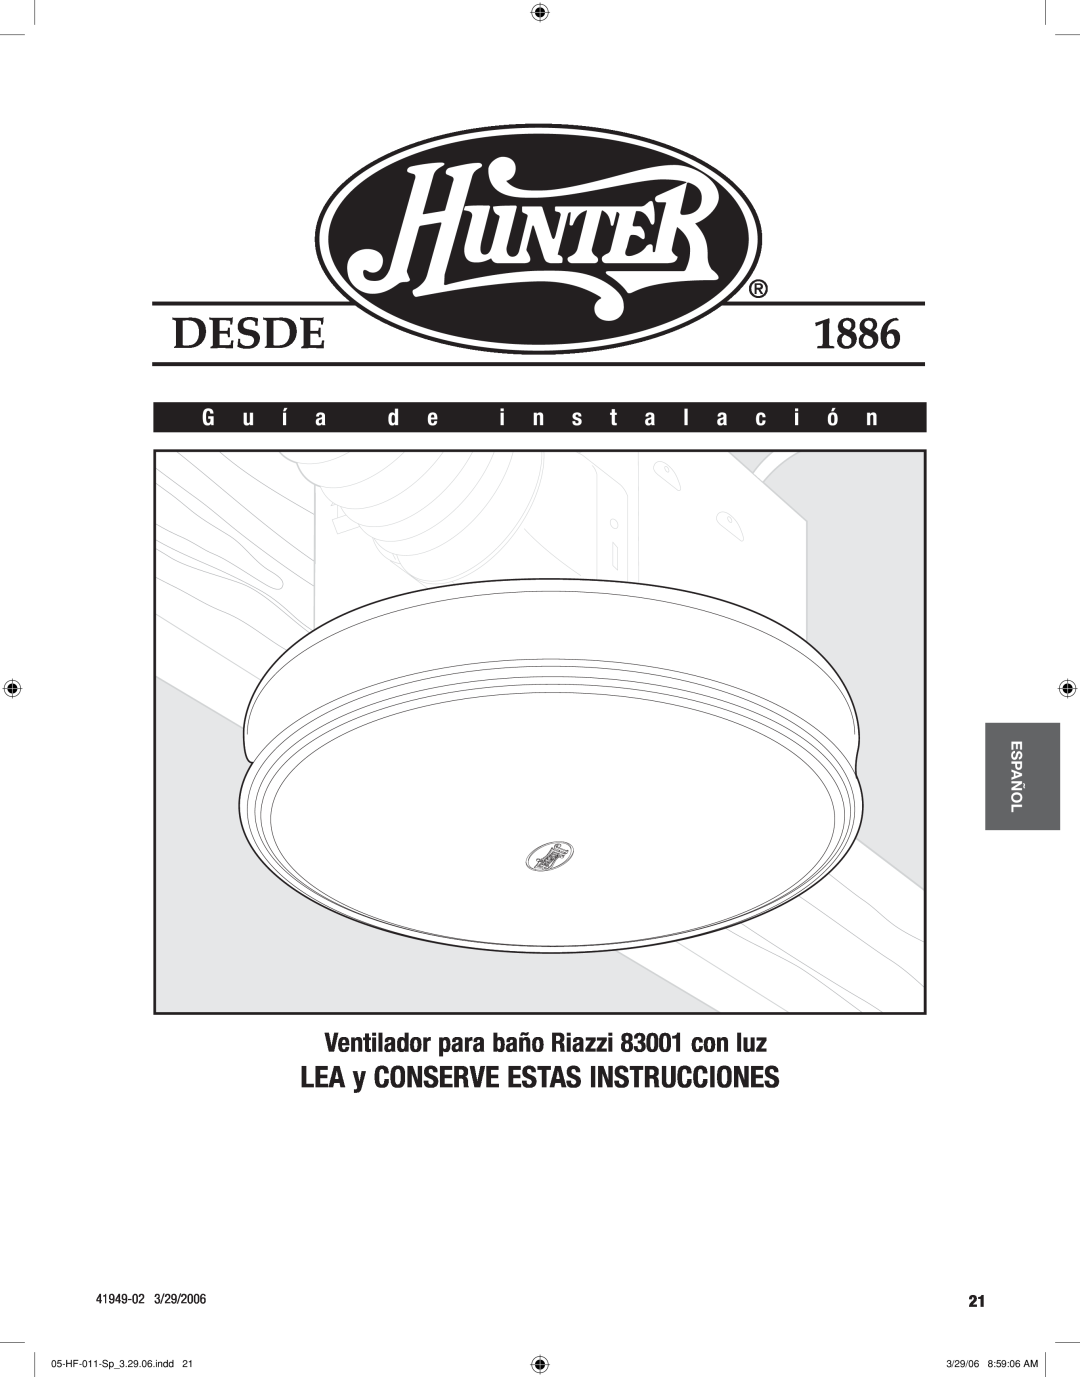 Hunter Fan manual LEA y CONSERVE ESTAS INSTRUCCIONES, Ventilador para baño Riazzi 83001 con luz, G u í a, Desde, Español 